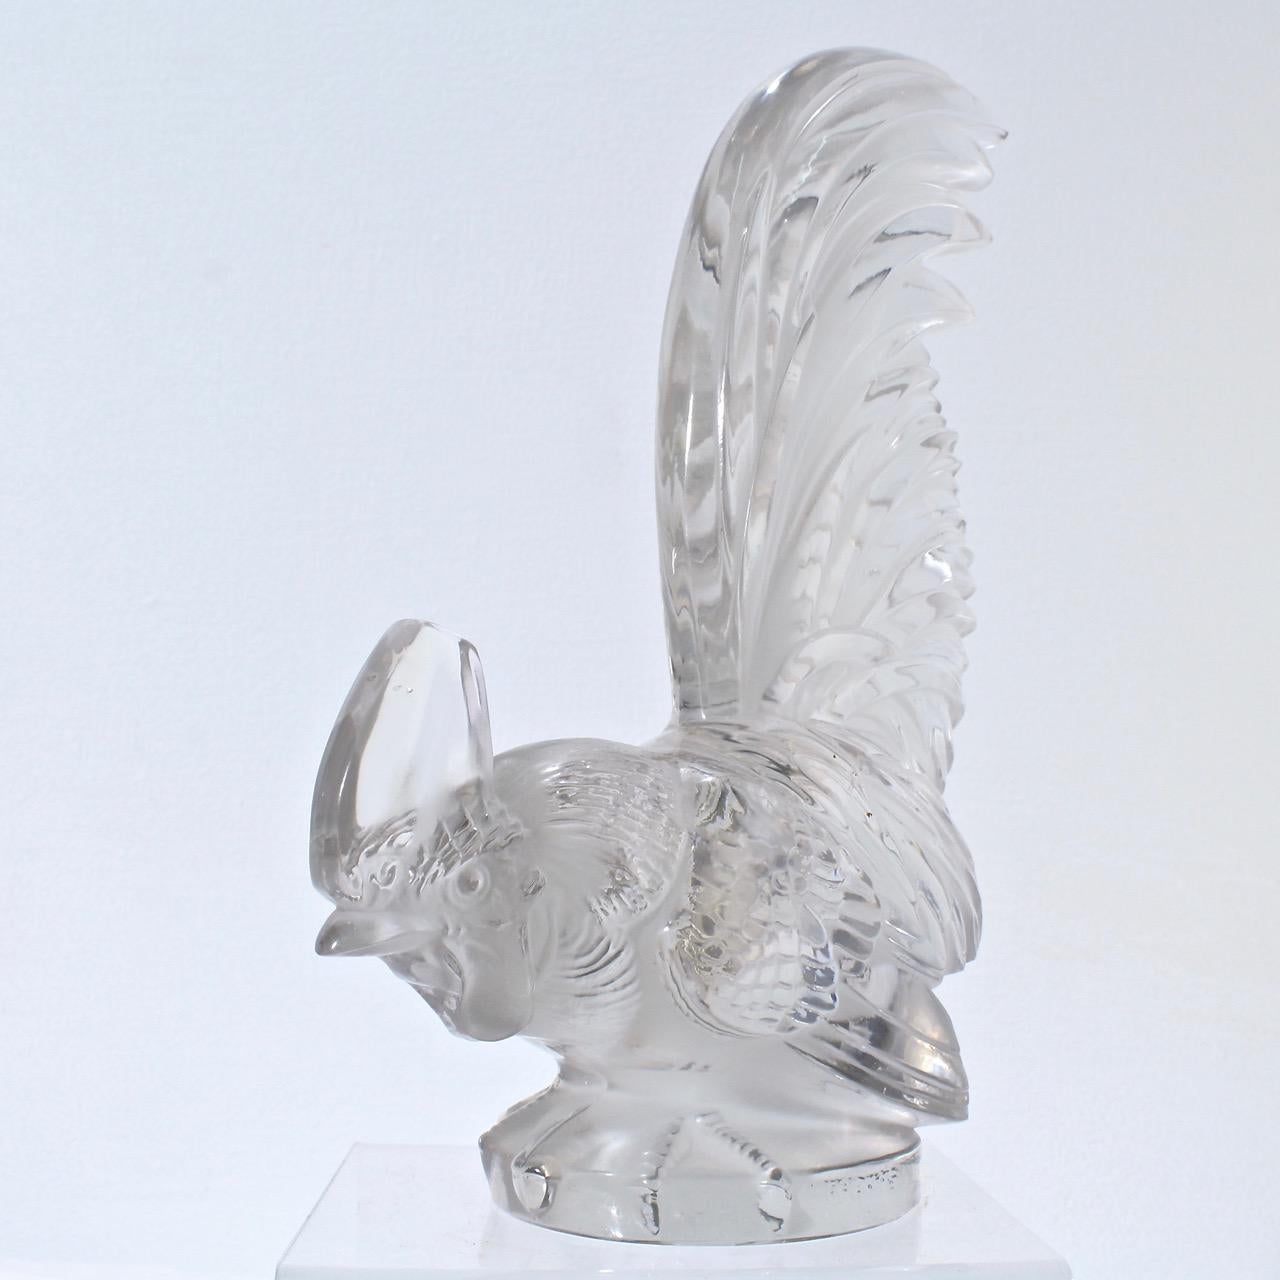 French Art Deco R. Lalique Art Glass Coq Nain Cockerel Car Mascot or Sculpture 5